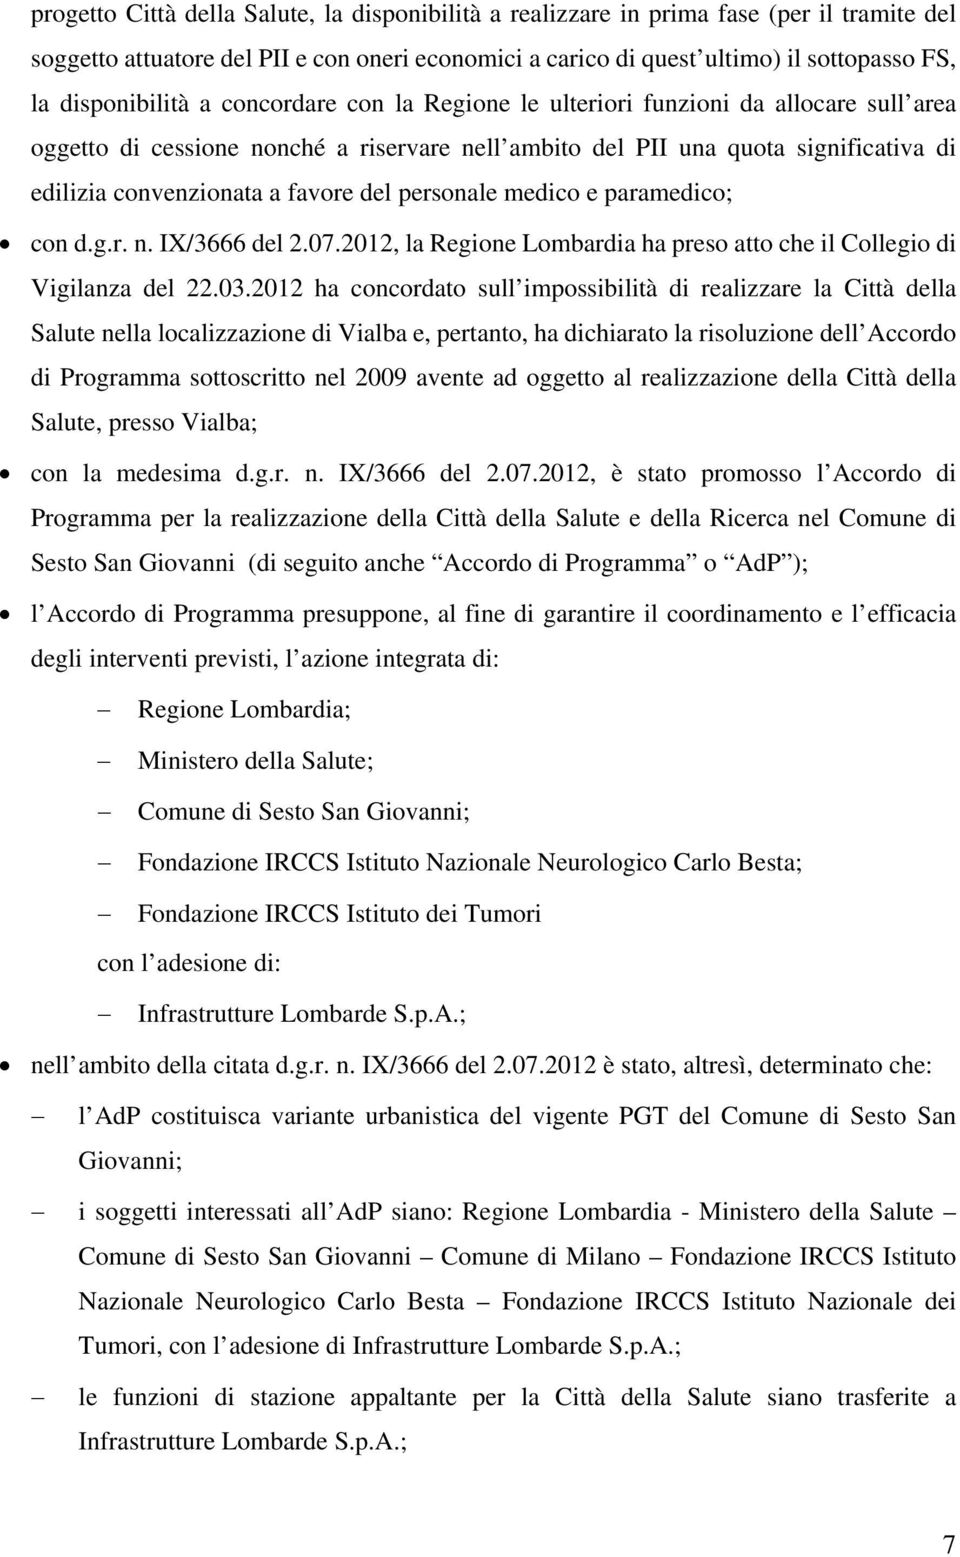 favore del personale medico e paramedico; con d.g.r. n. IX/3666 del 2.07.2012, la Regione Lombardia ha preso atto che il Collegio di Vigilanza del 22.03.